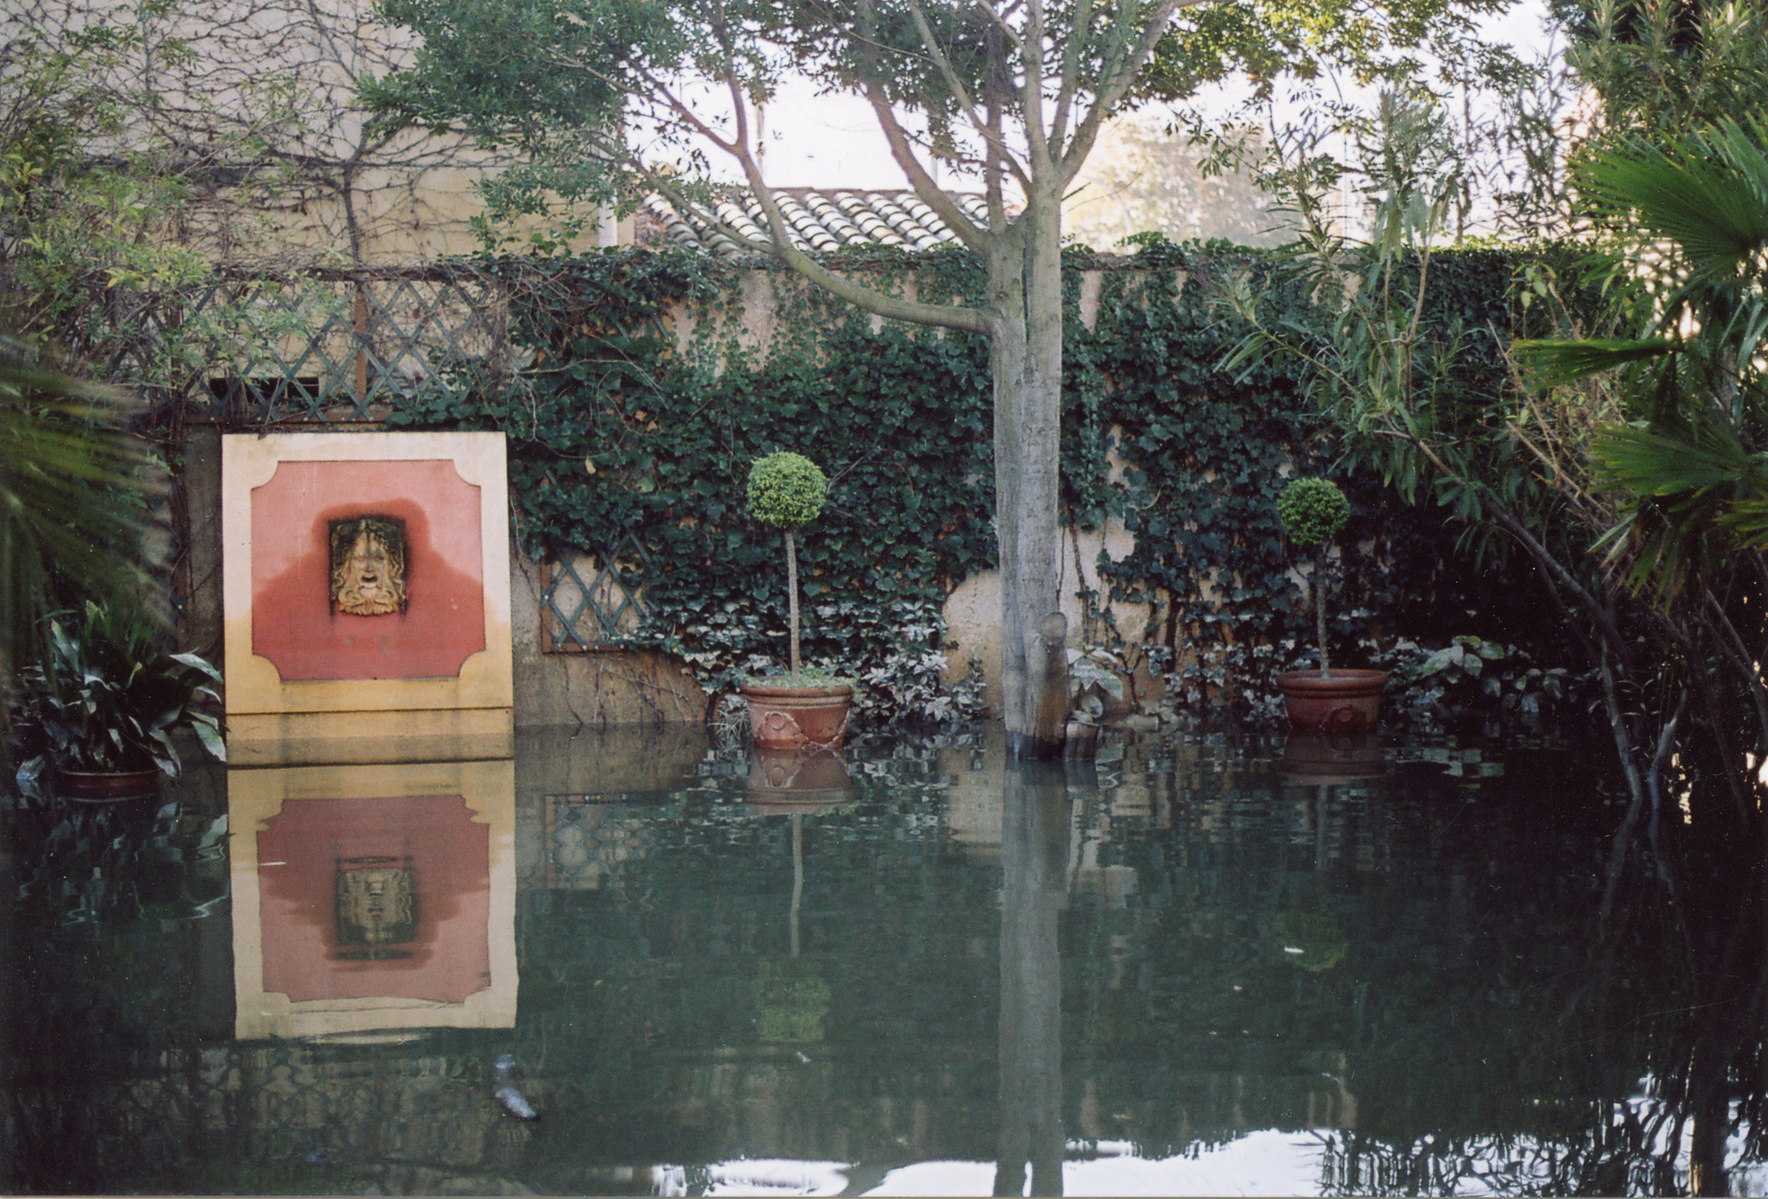 Inondation 2003 Arles, Photographie d’archive de P.J. Montagnier